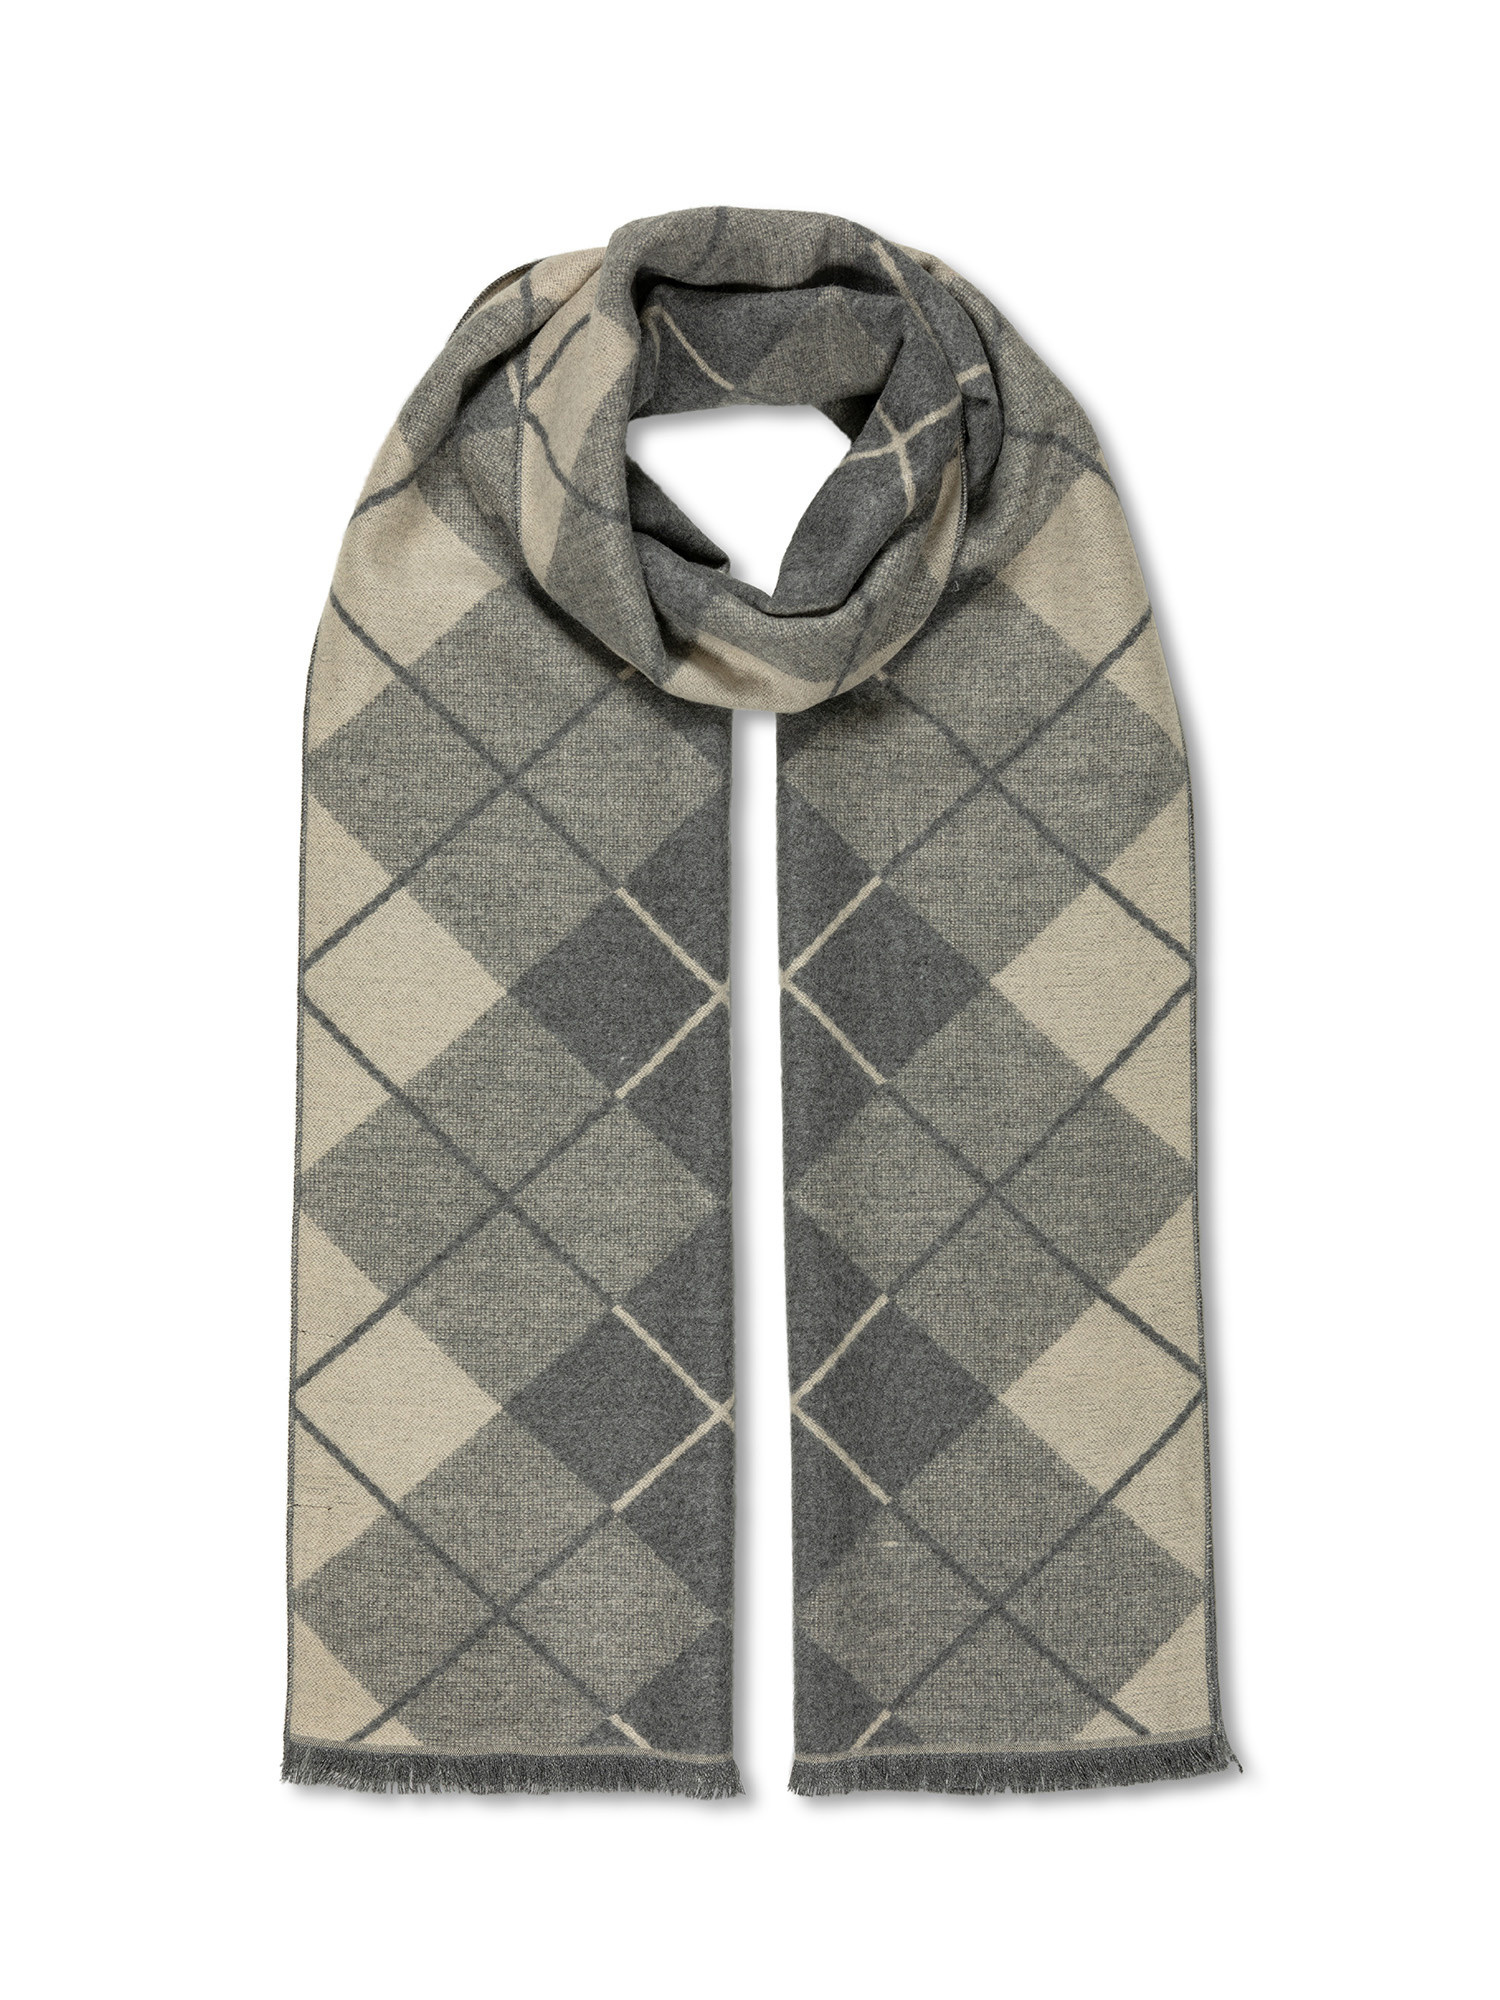 Luca D'Altieri - Diamond-patterned scarf, Light Beige, large image number 0